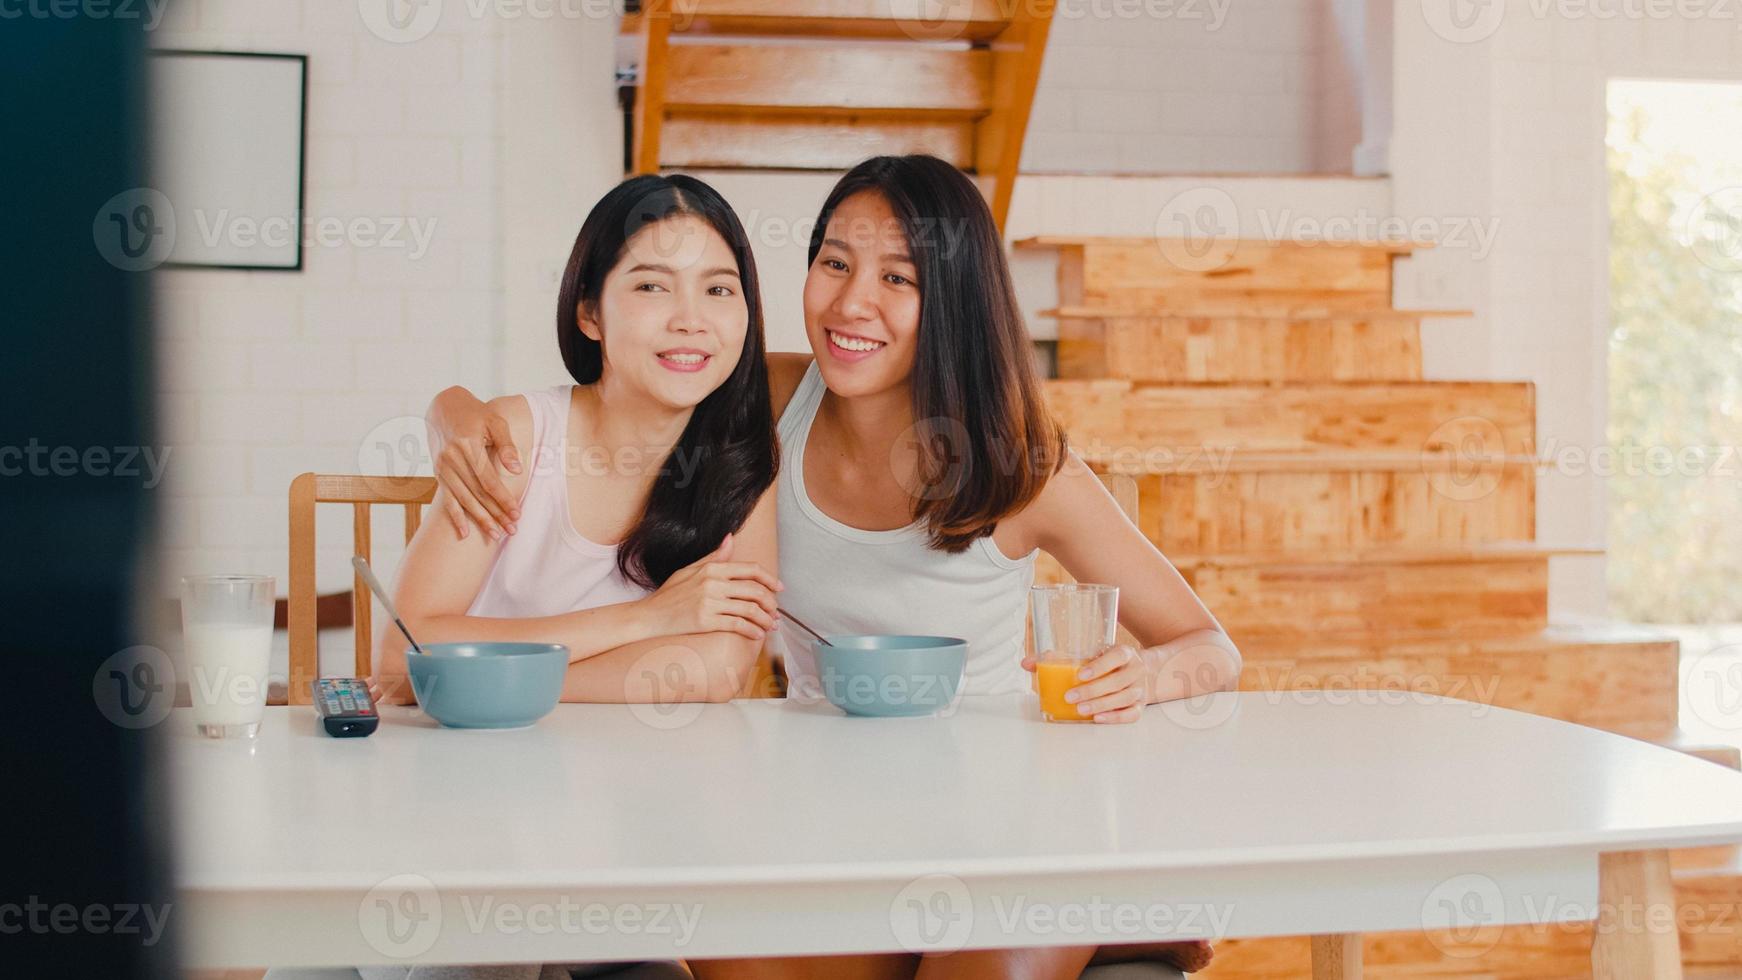 Asiatiska lesbiska lgbtq kvinnor par äter frukost hemma, unga asienälskare flickor tittar gärna på tv medan de dricker juice, cornflakes flingor och mjölk i skål på bordet i köket på morgonen koncept. foto